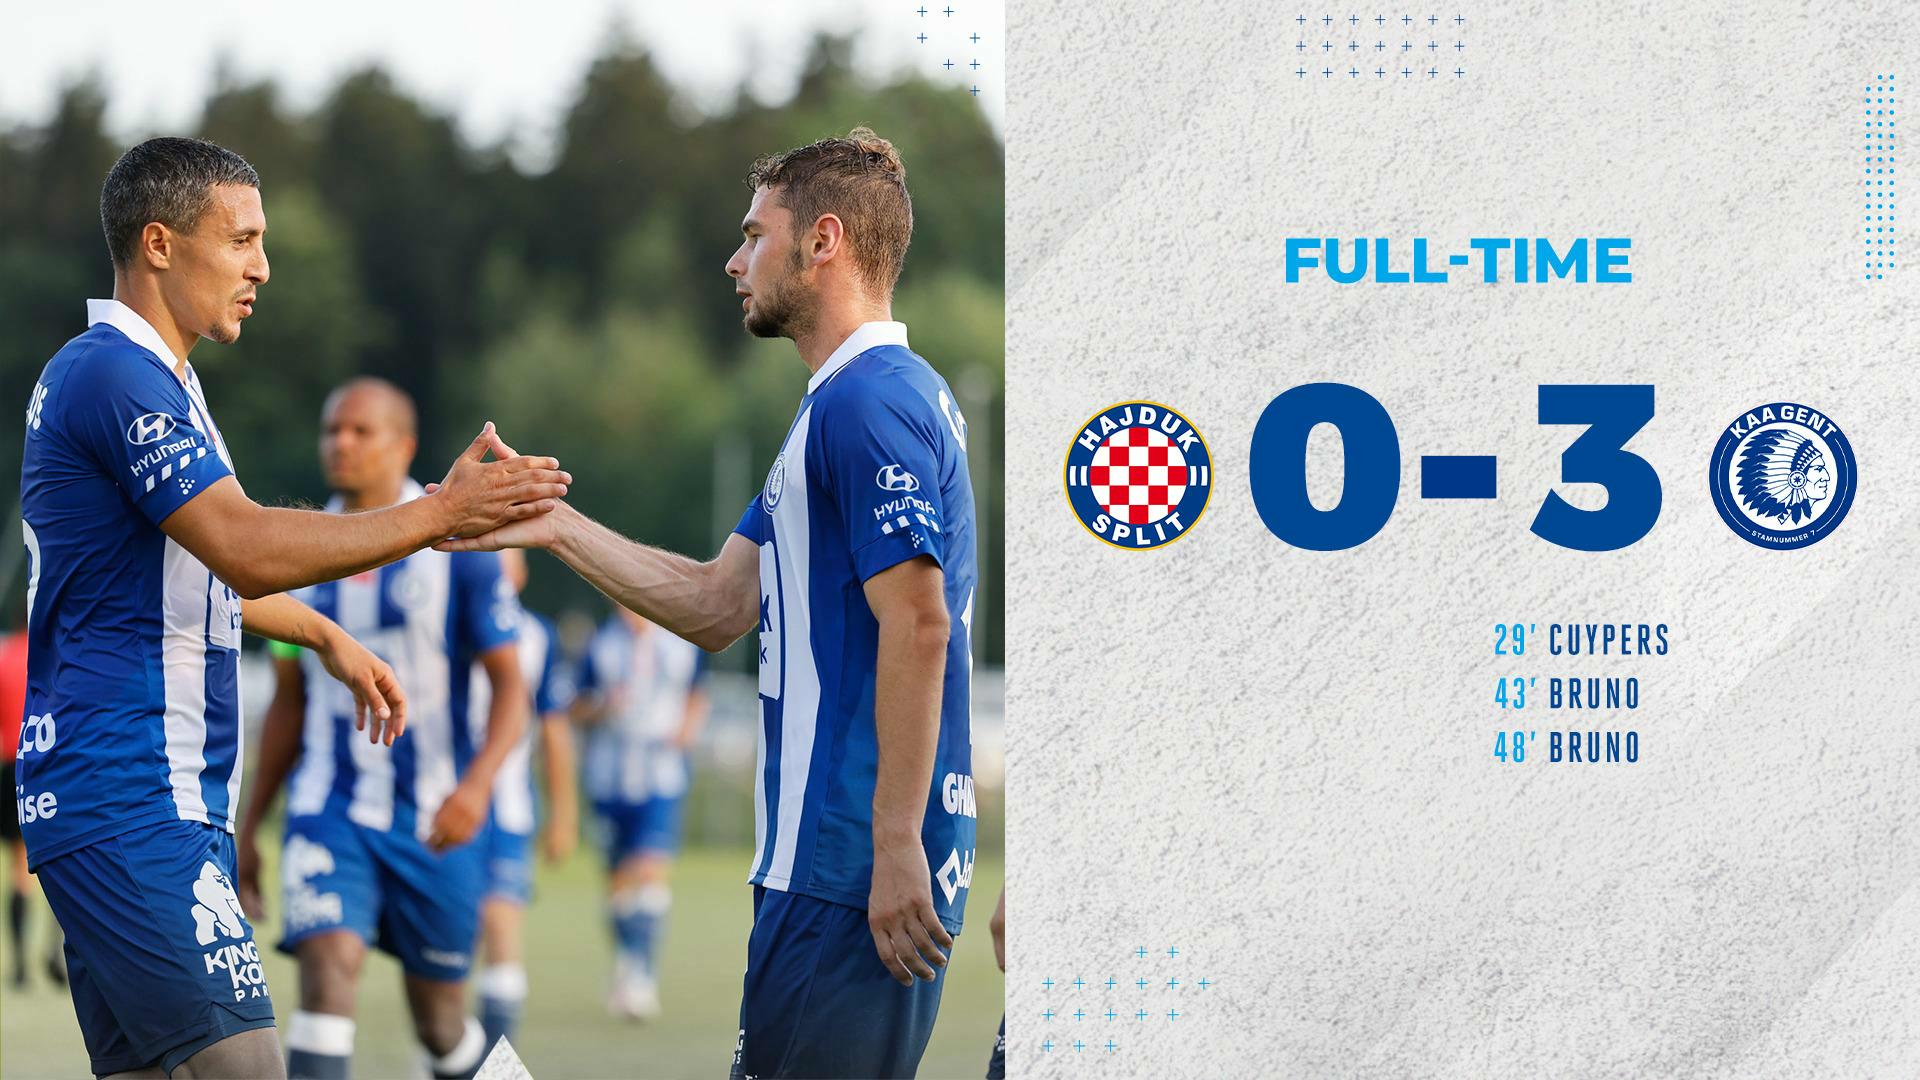 Sterke overwinning tegen Hajduk Split